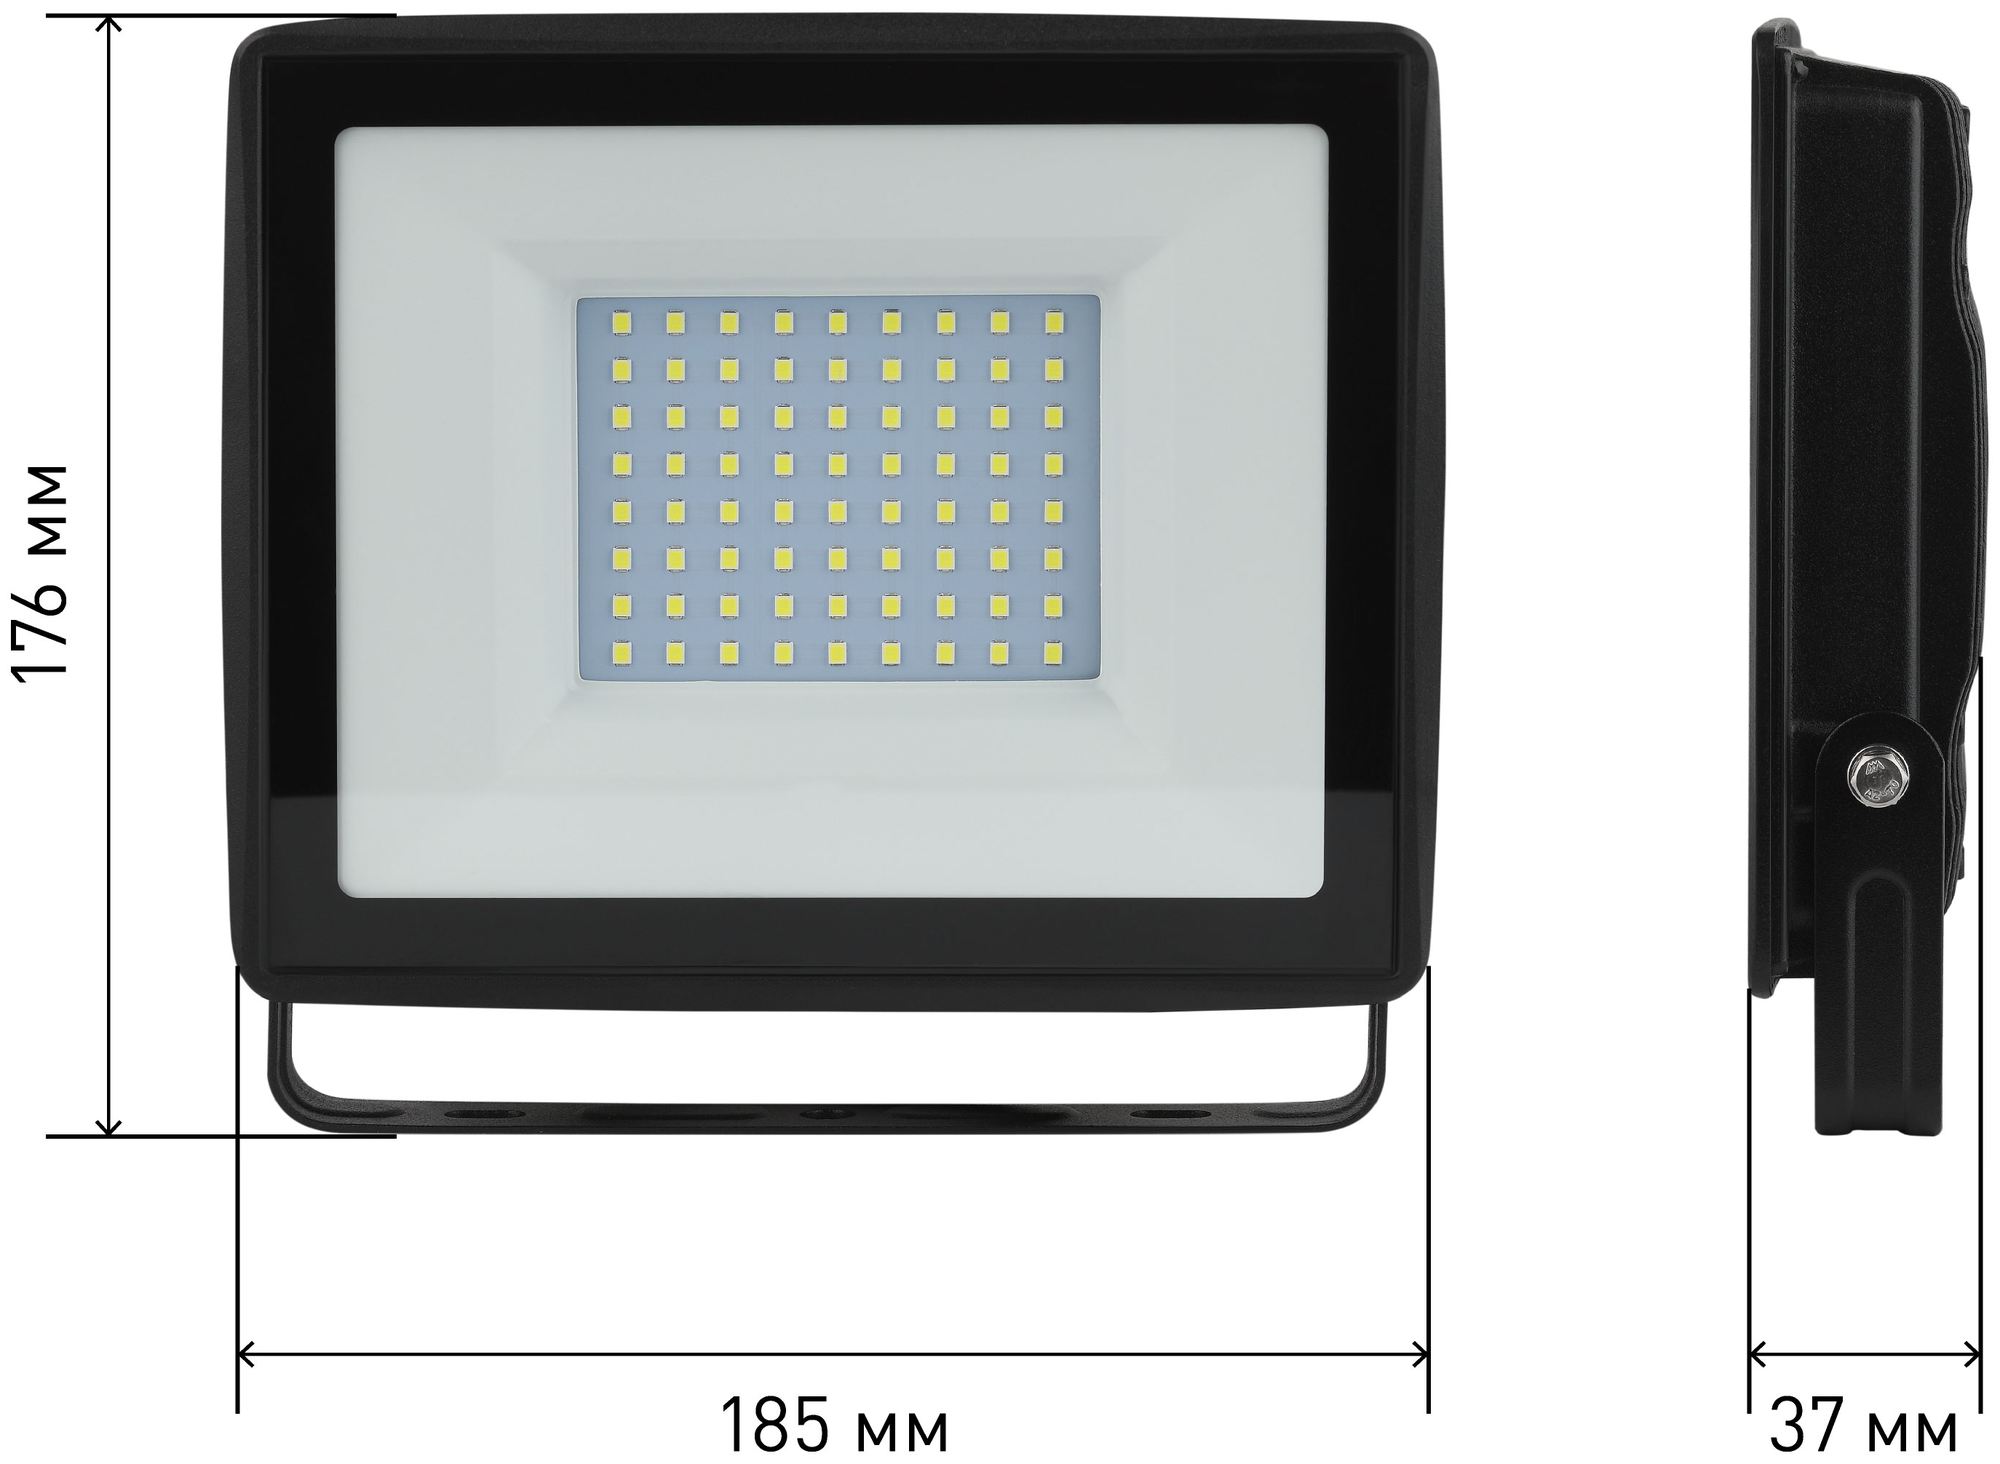 Прожектор светодиодный уличный ЭРА LPR-023-0-65K-100 100Вт 6500K 8000Лм IP65